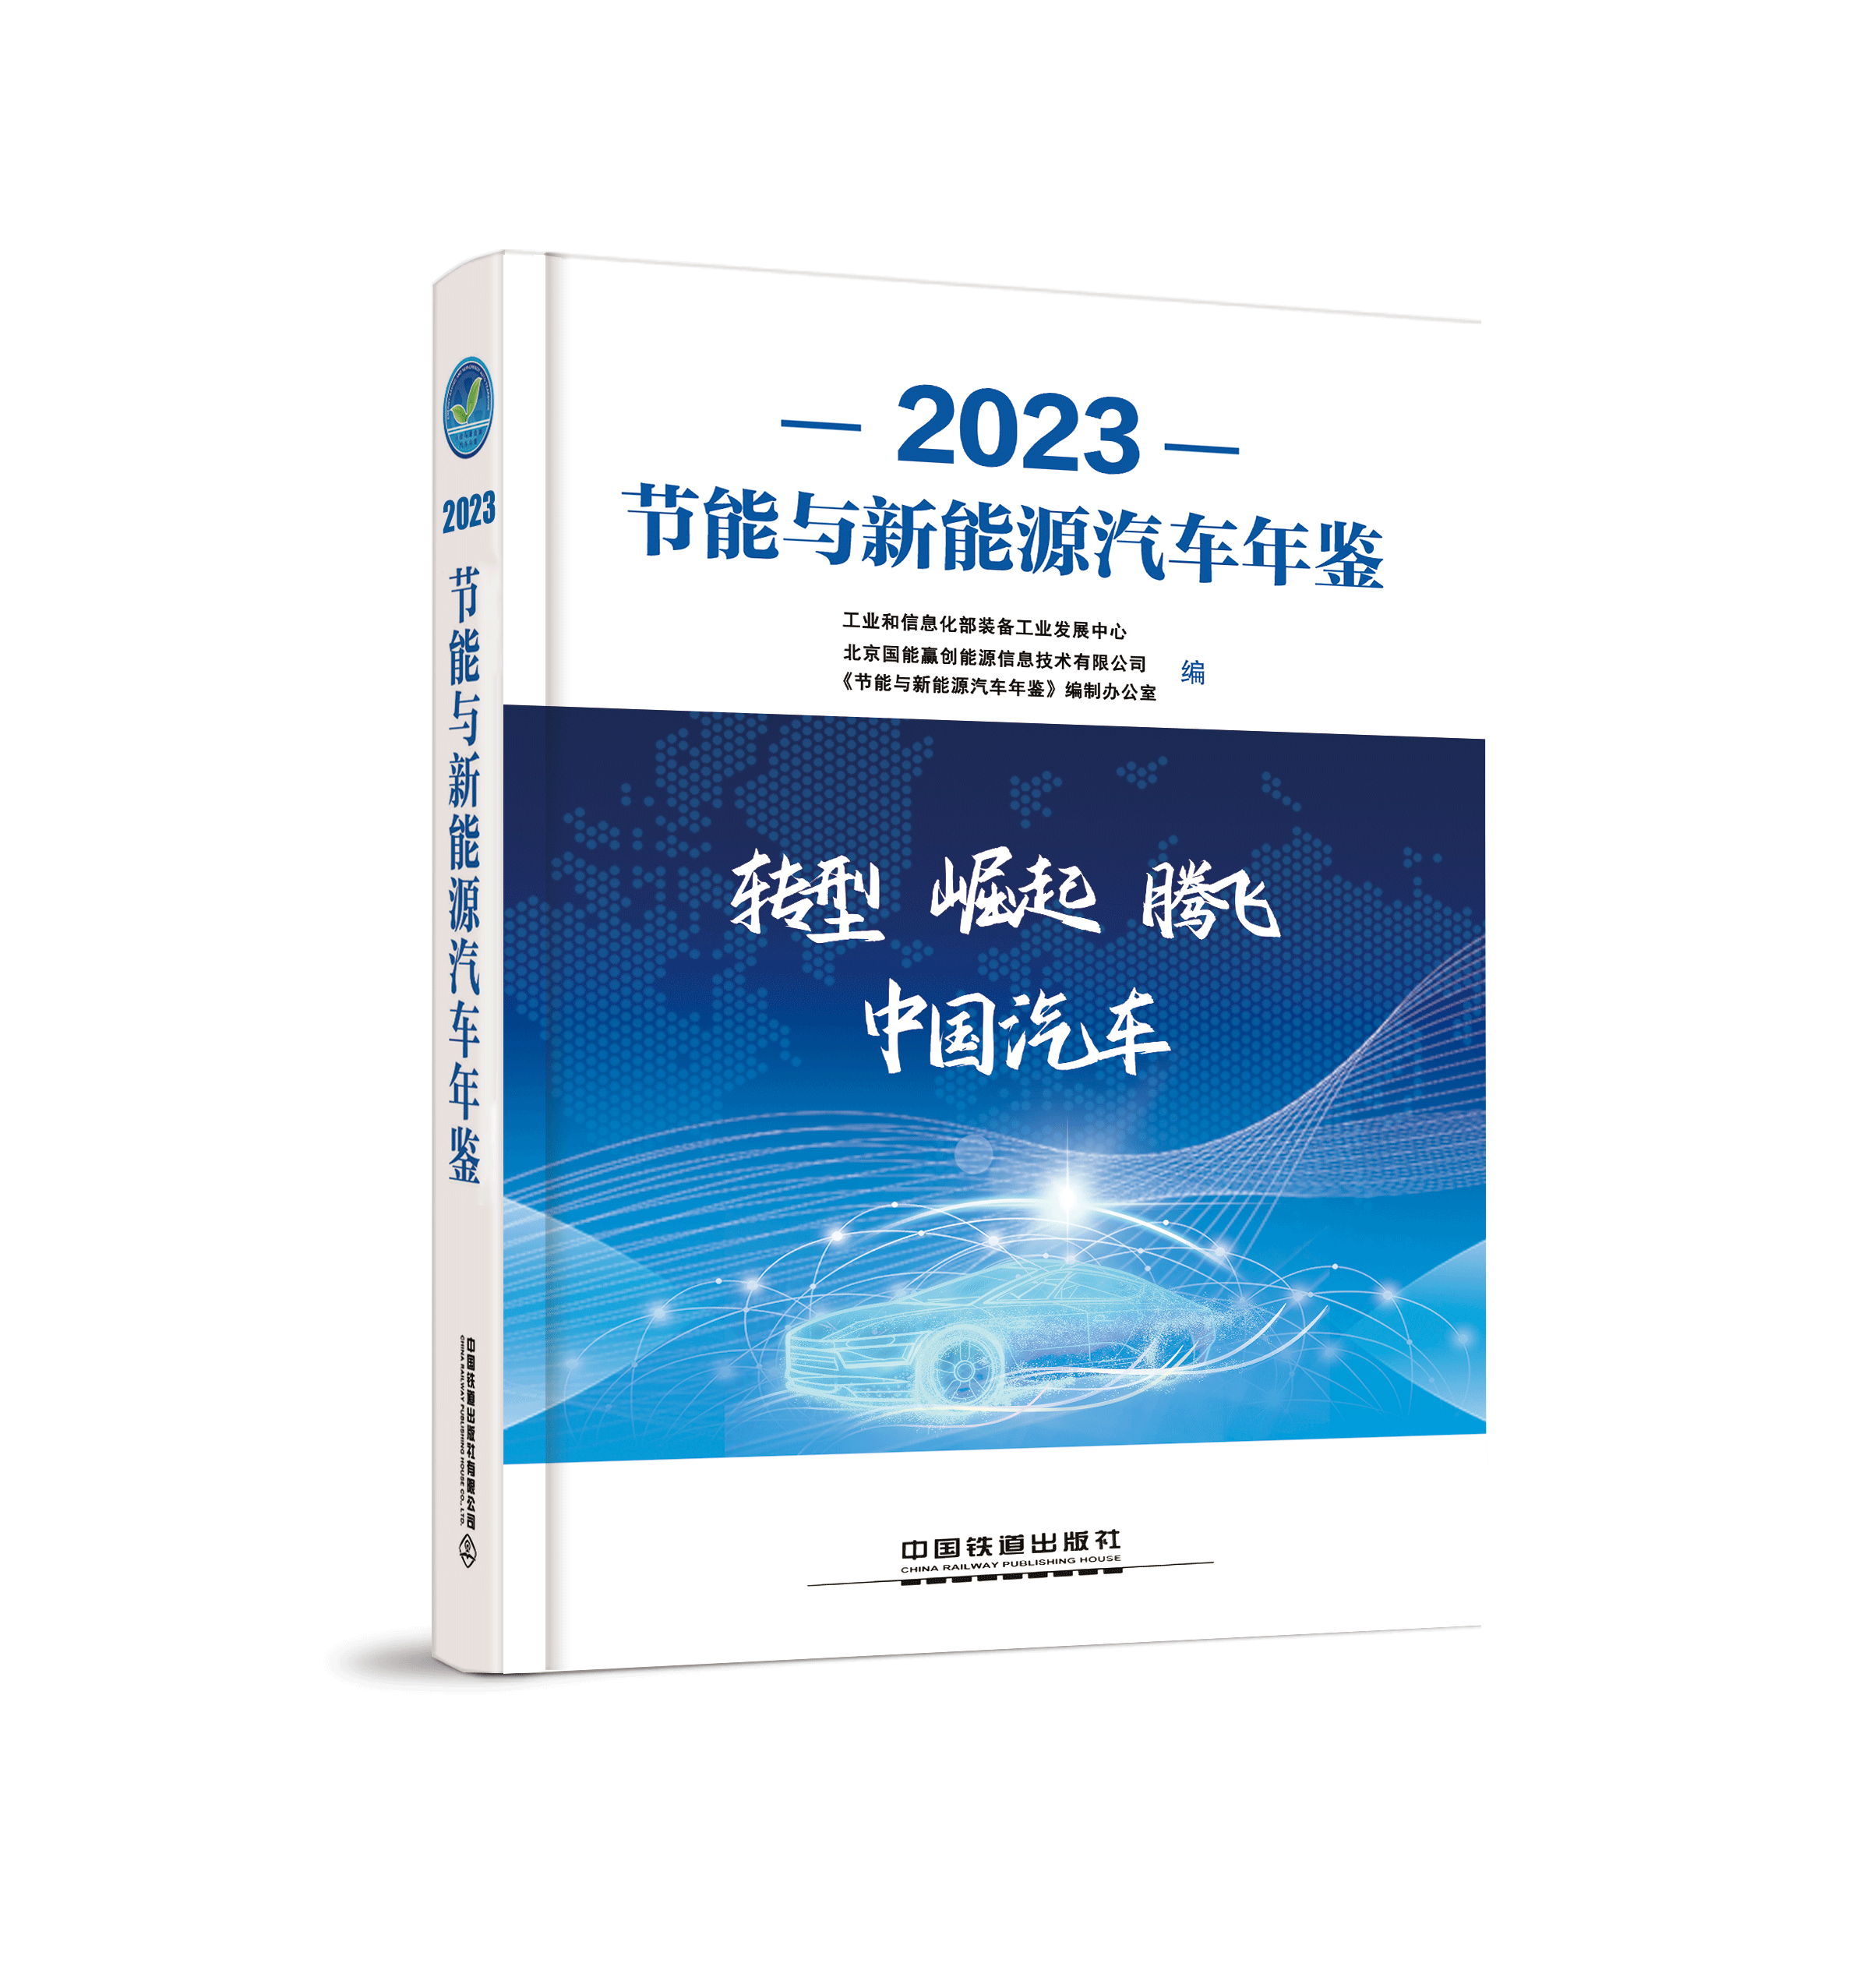 《2023节能与新能源汽车年鉴》 今日发布